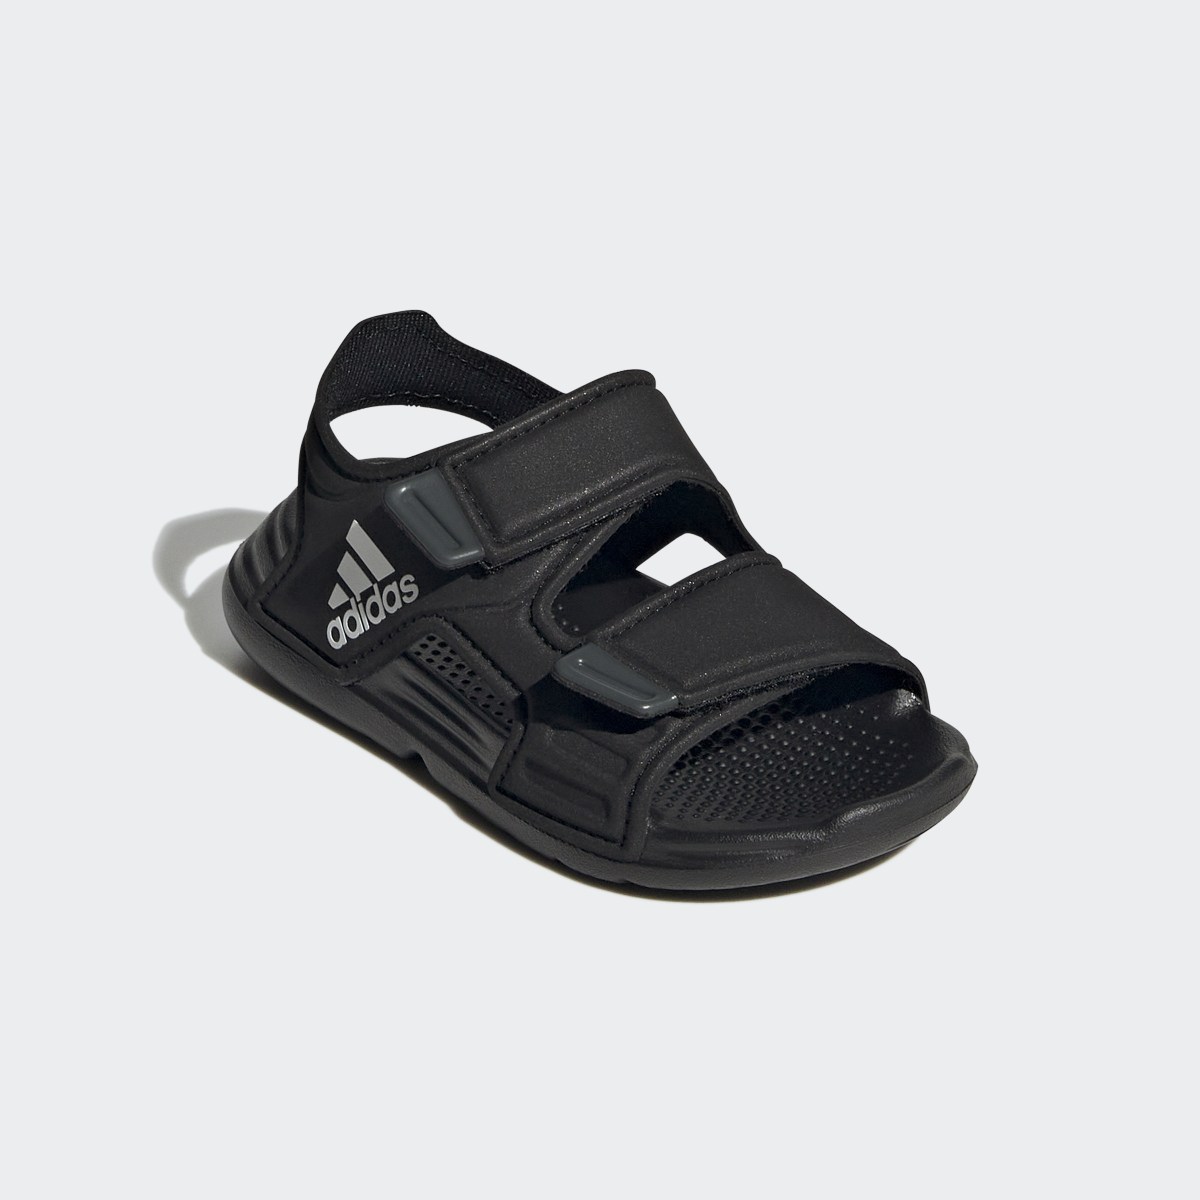 Adidas Altaswim Sandals. 5